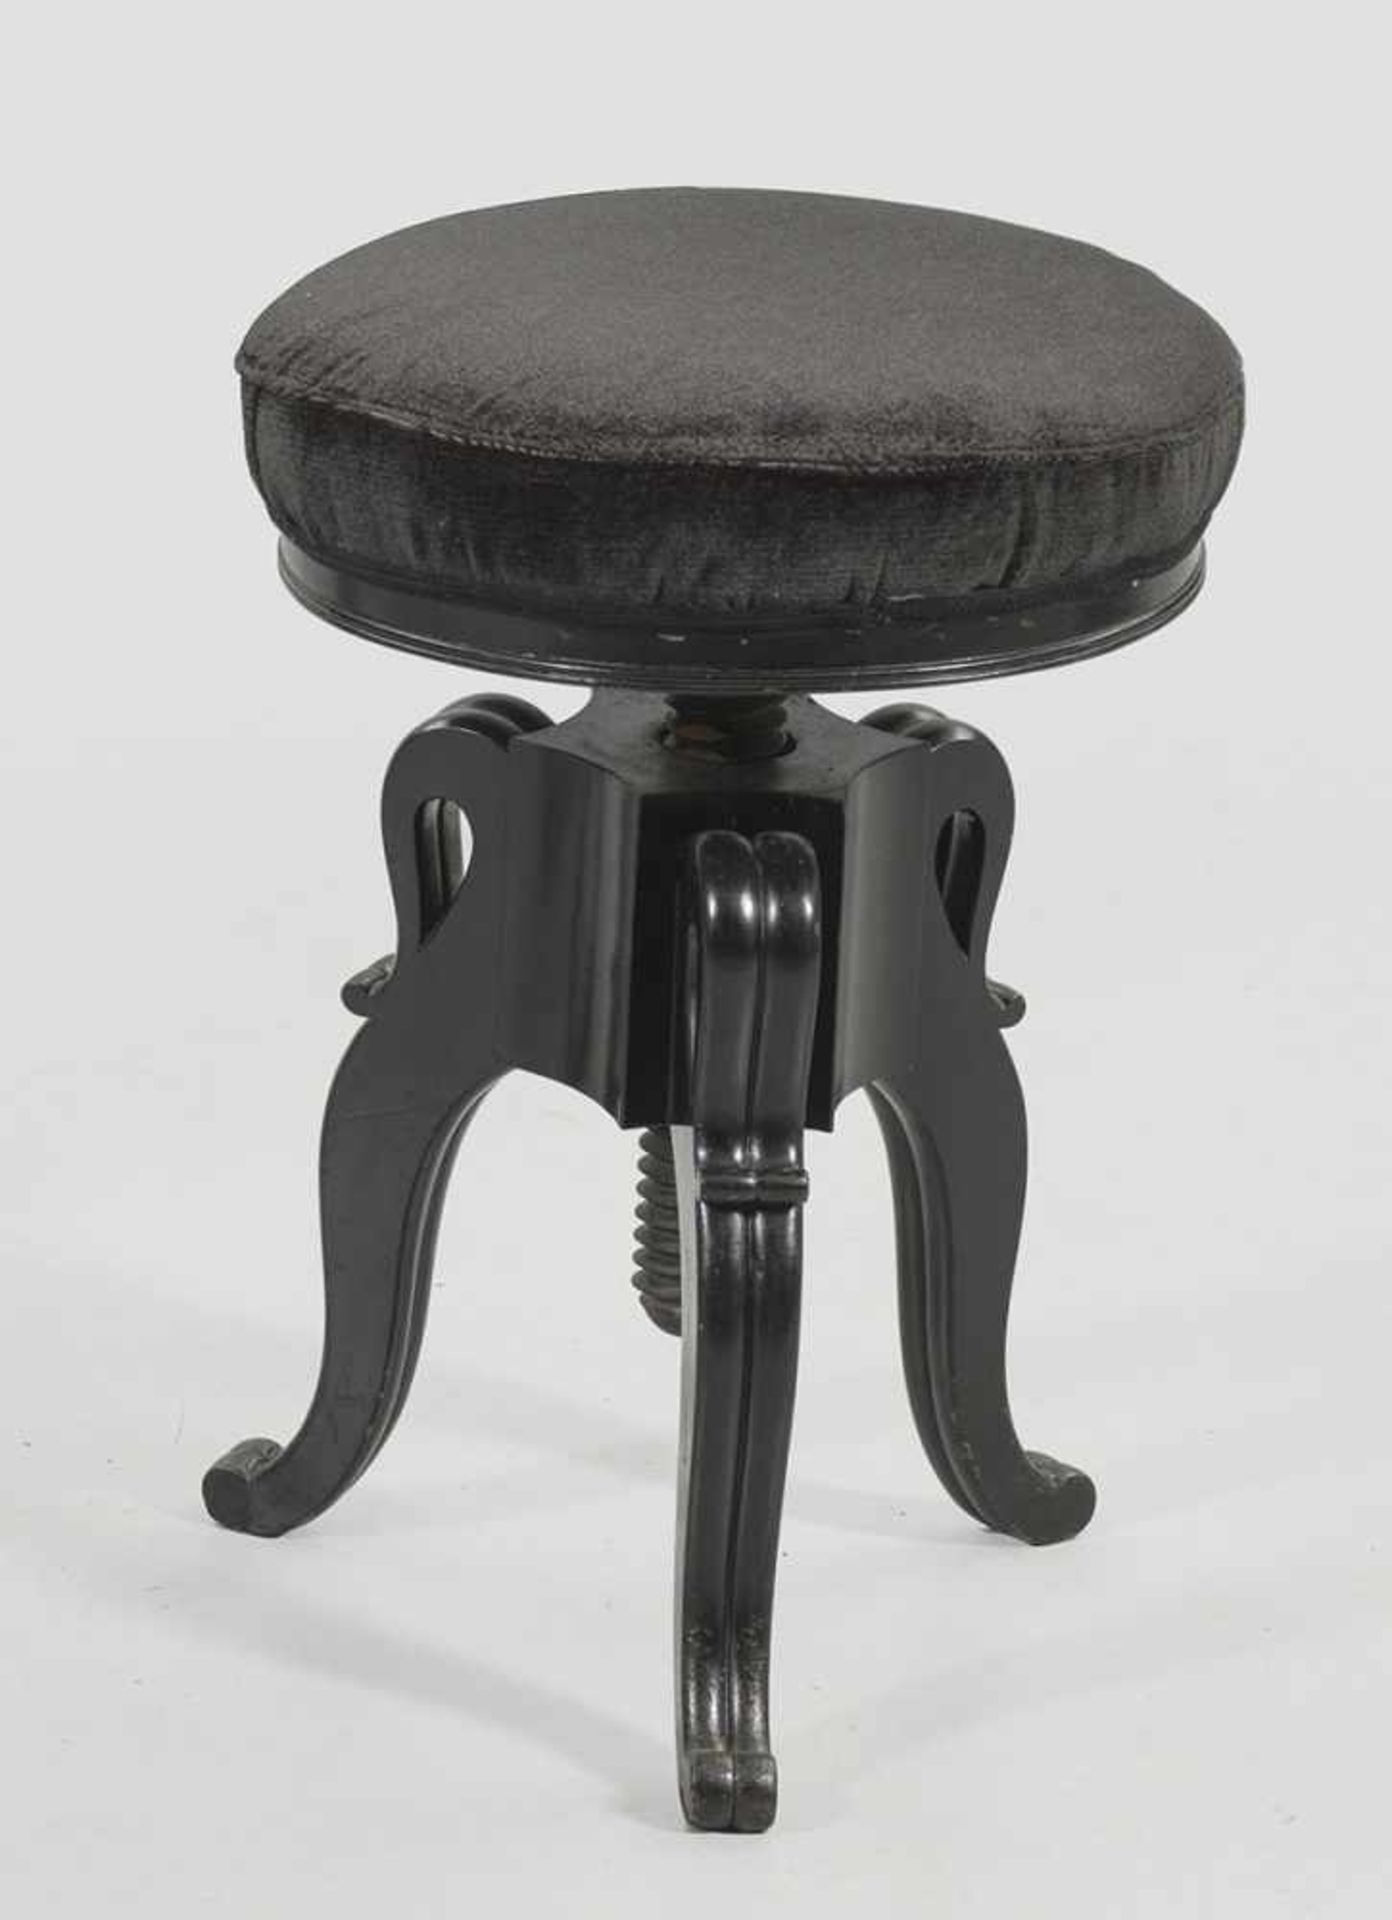 Louis Philippe-KlavierhockerHolz, schwarz lackiert. Runde, höhenverstellbare, gepolsterte Sitzfläche